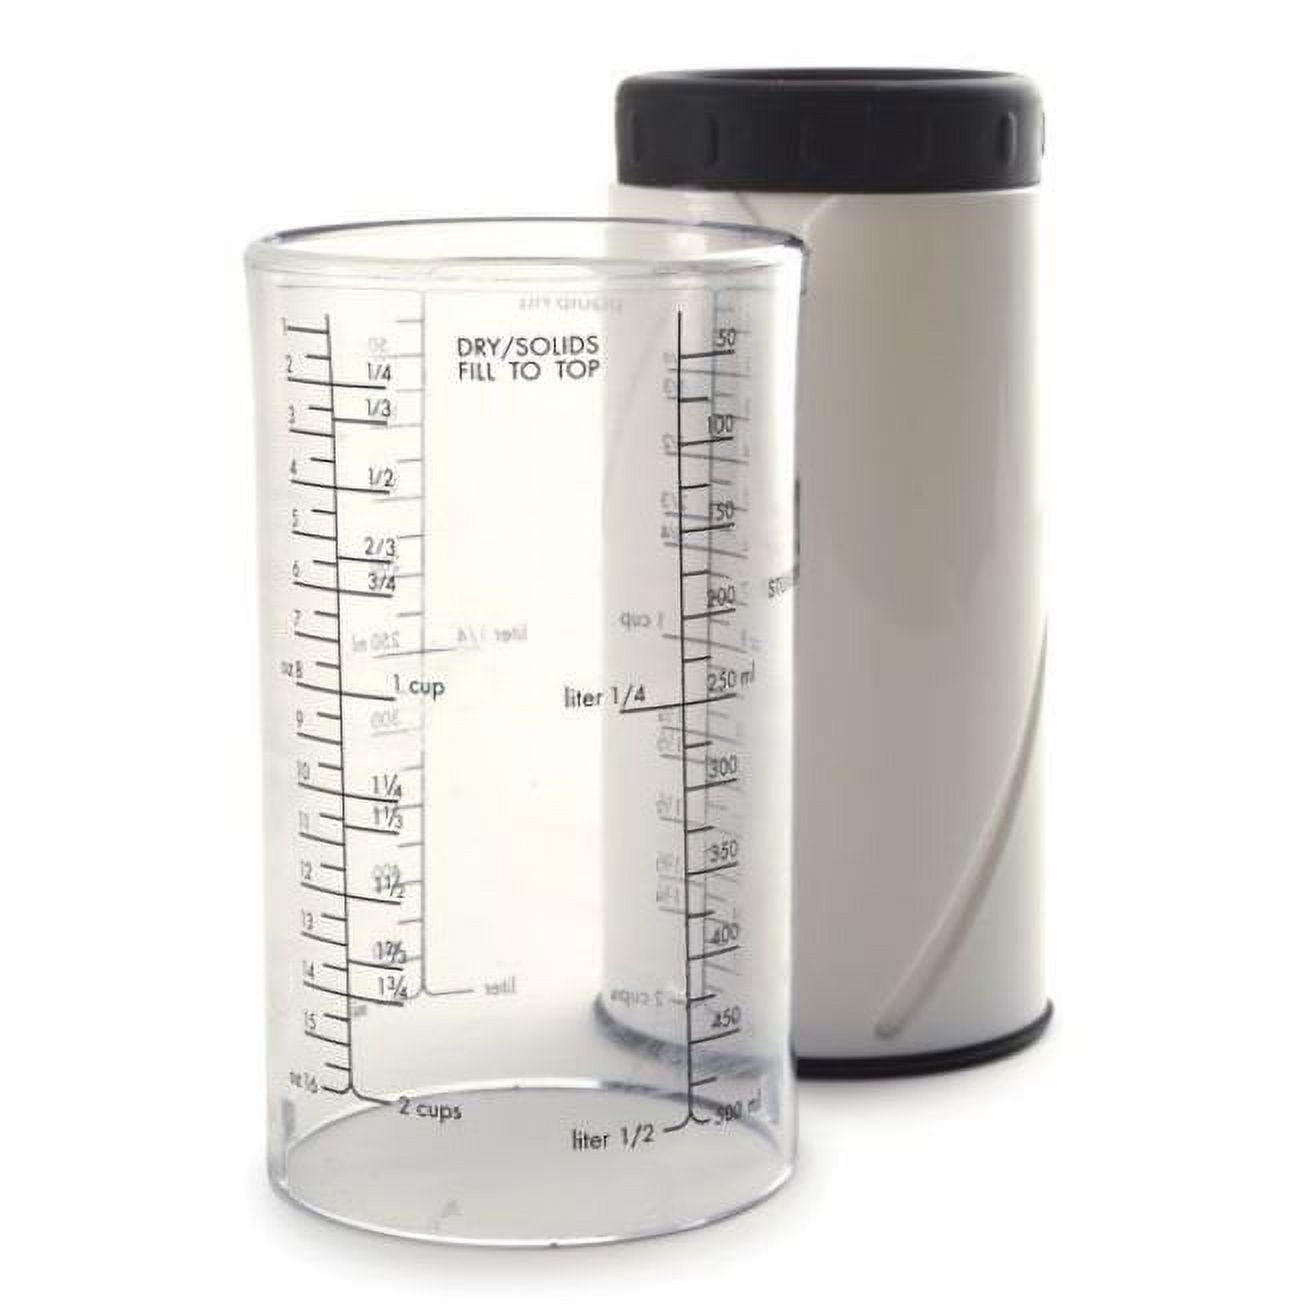 Nuscüp: Adjustable Measuring Cup